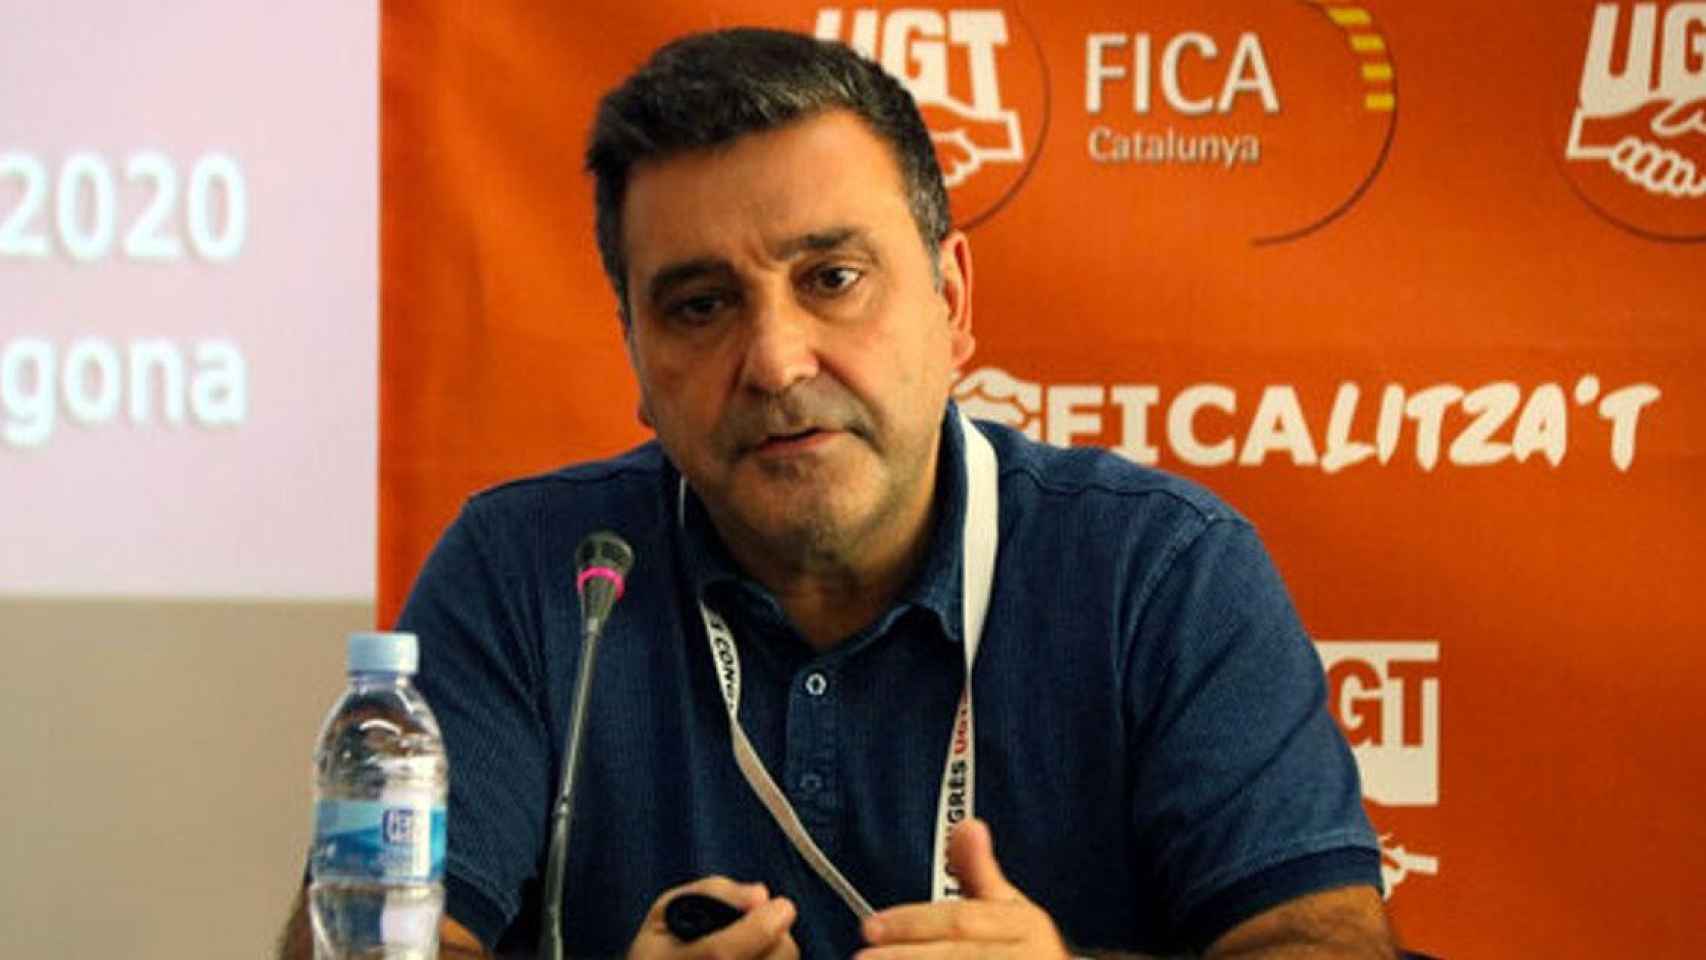 El presidente de UGT de Cataluña, Matías Carnero / EUROPA PRESS